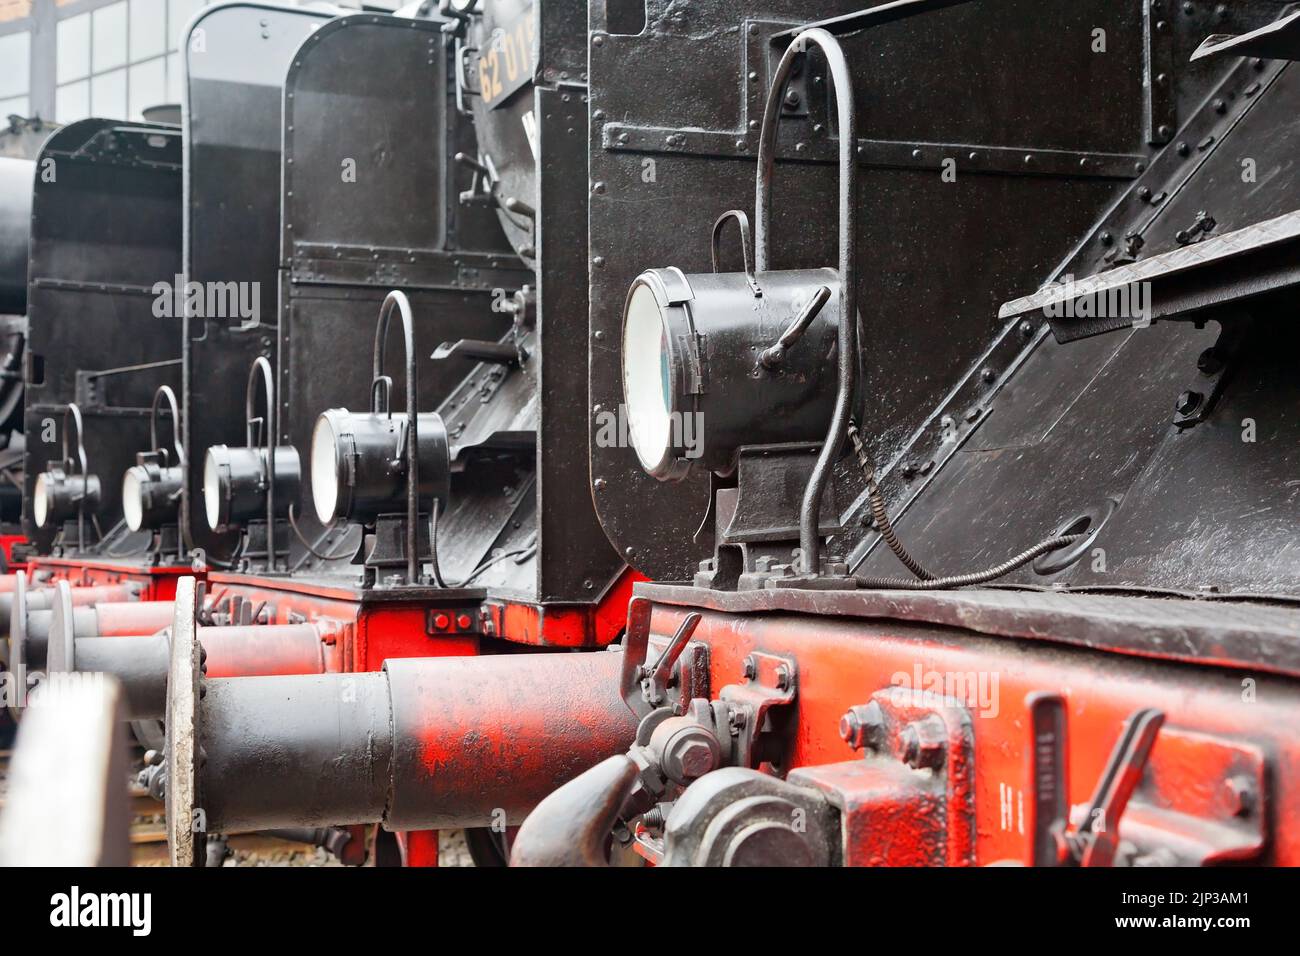 Ancienne locomotive à vapeur, détails, roue, lampe, Dresde, Geramany Banque D'Images